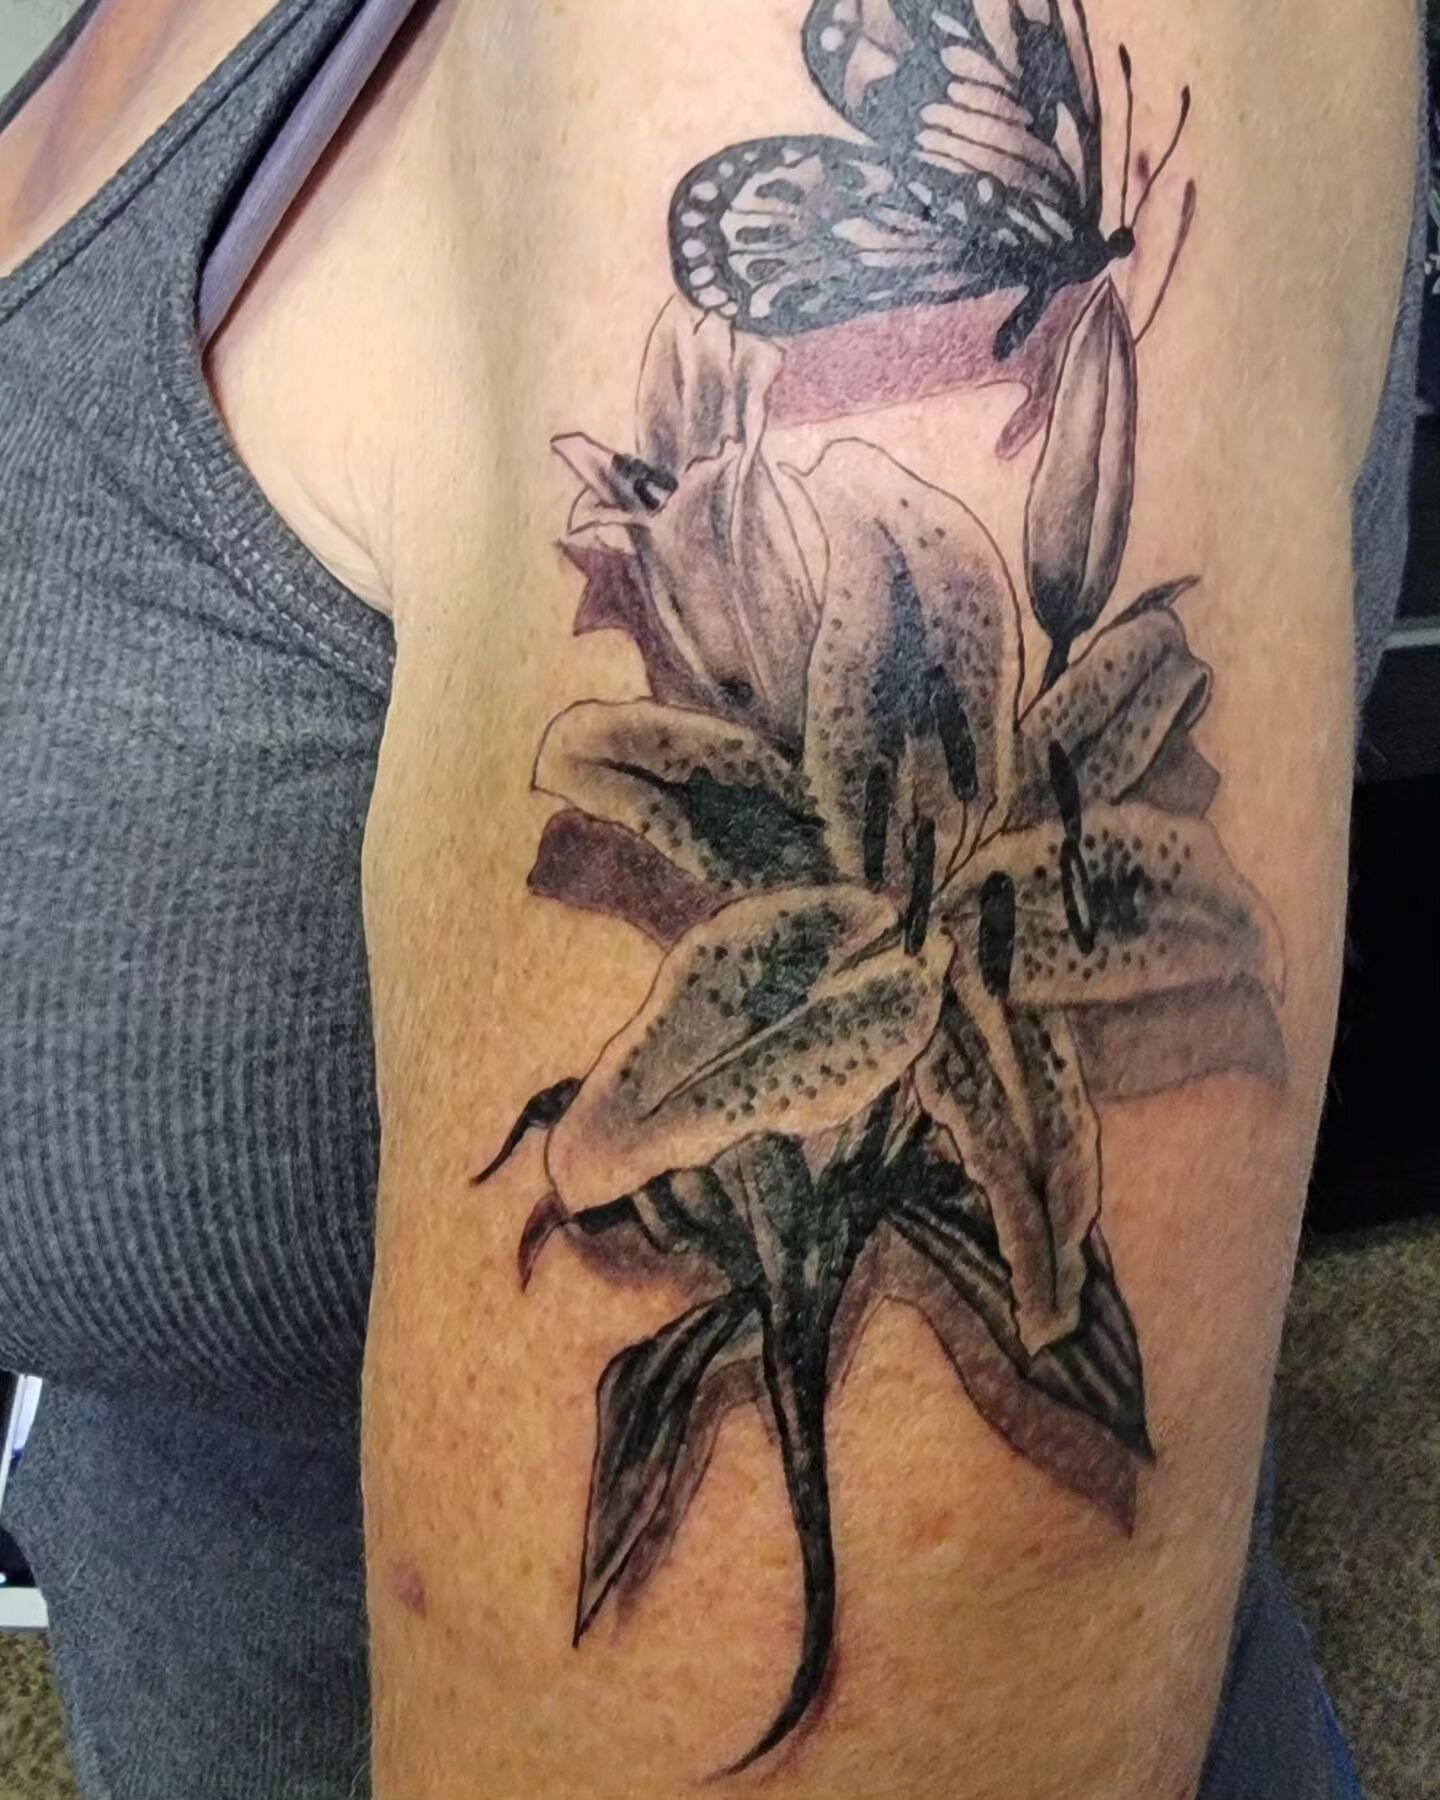 www.sunnytheartist.com

#tattoo #flower #butterfly